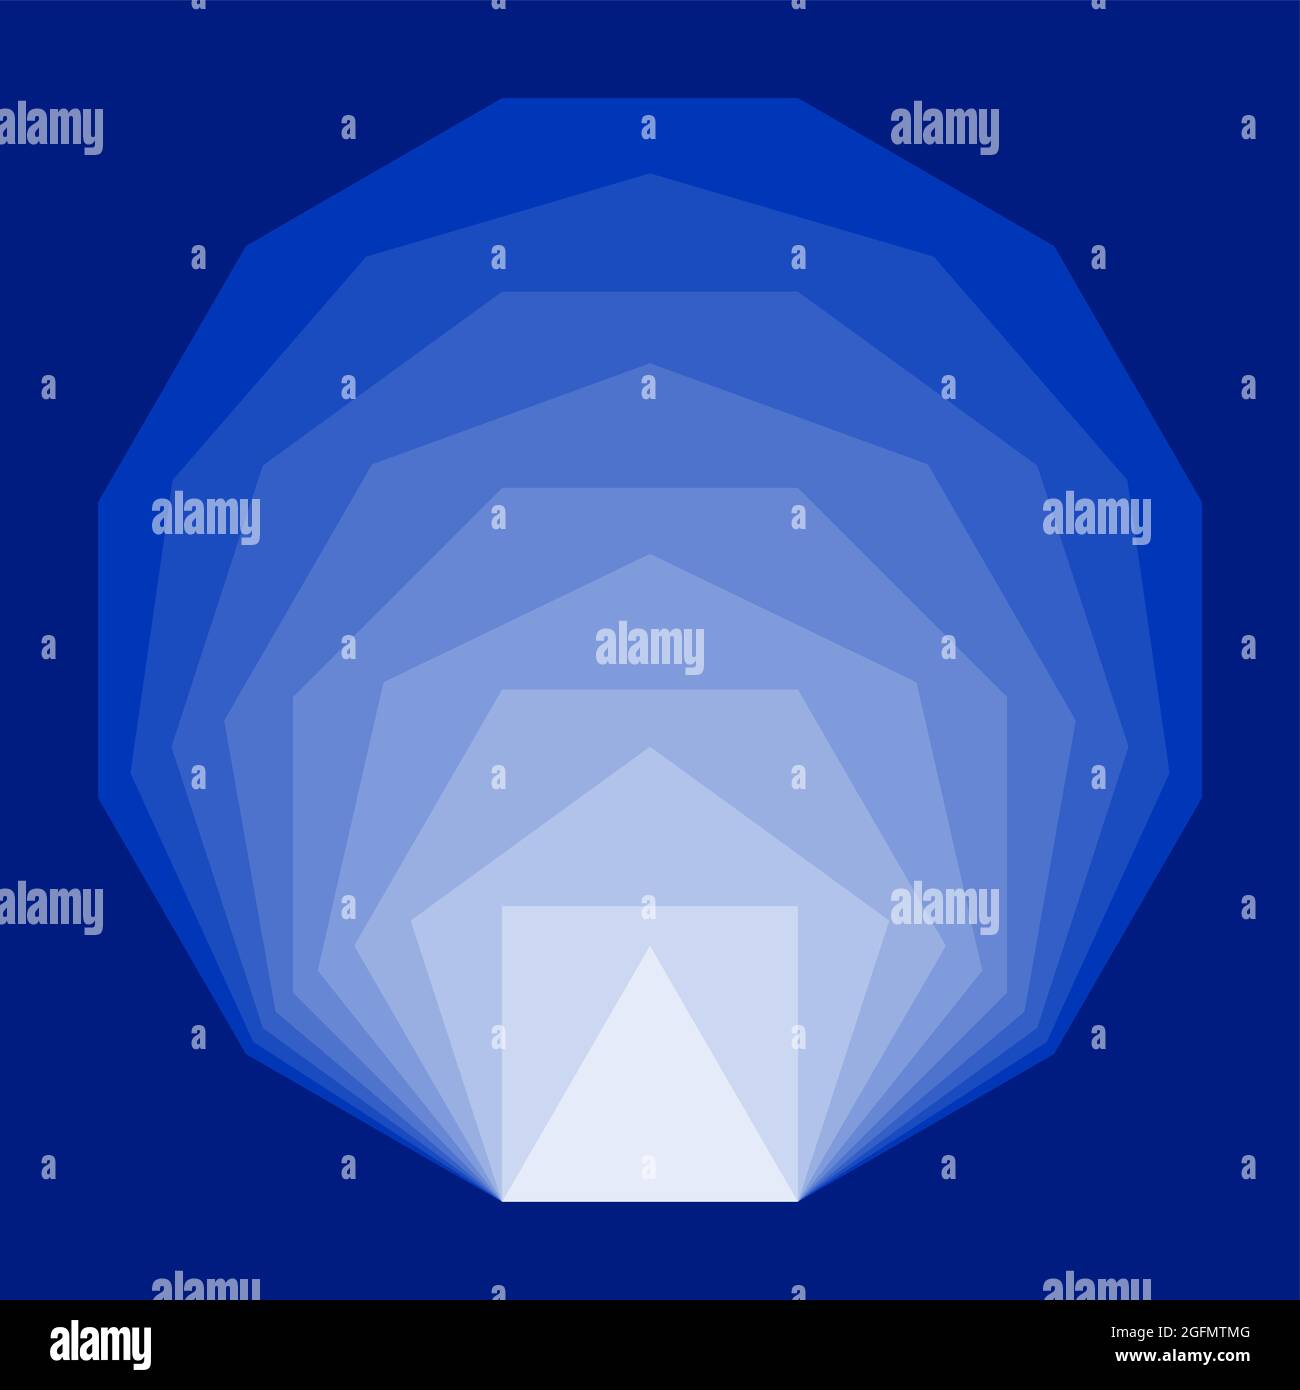 Polygones réguliers convexes bleus, placés les uns à l'intérieur des autres. Polygones équiangulaires et équilatéraux avec la même longueur de segment de ligne. Banque D'Images